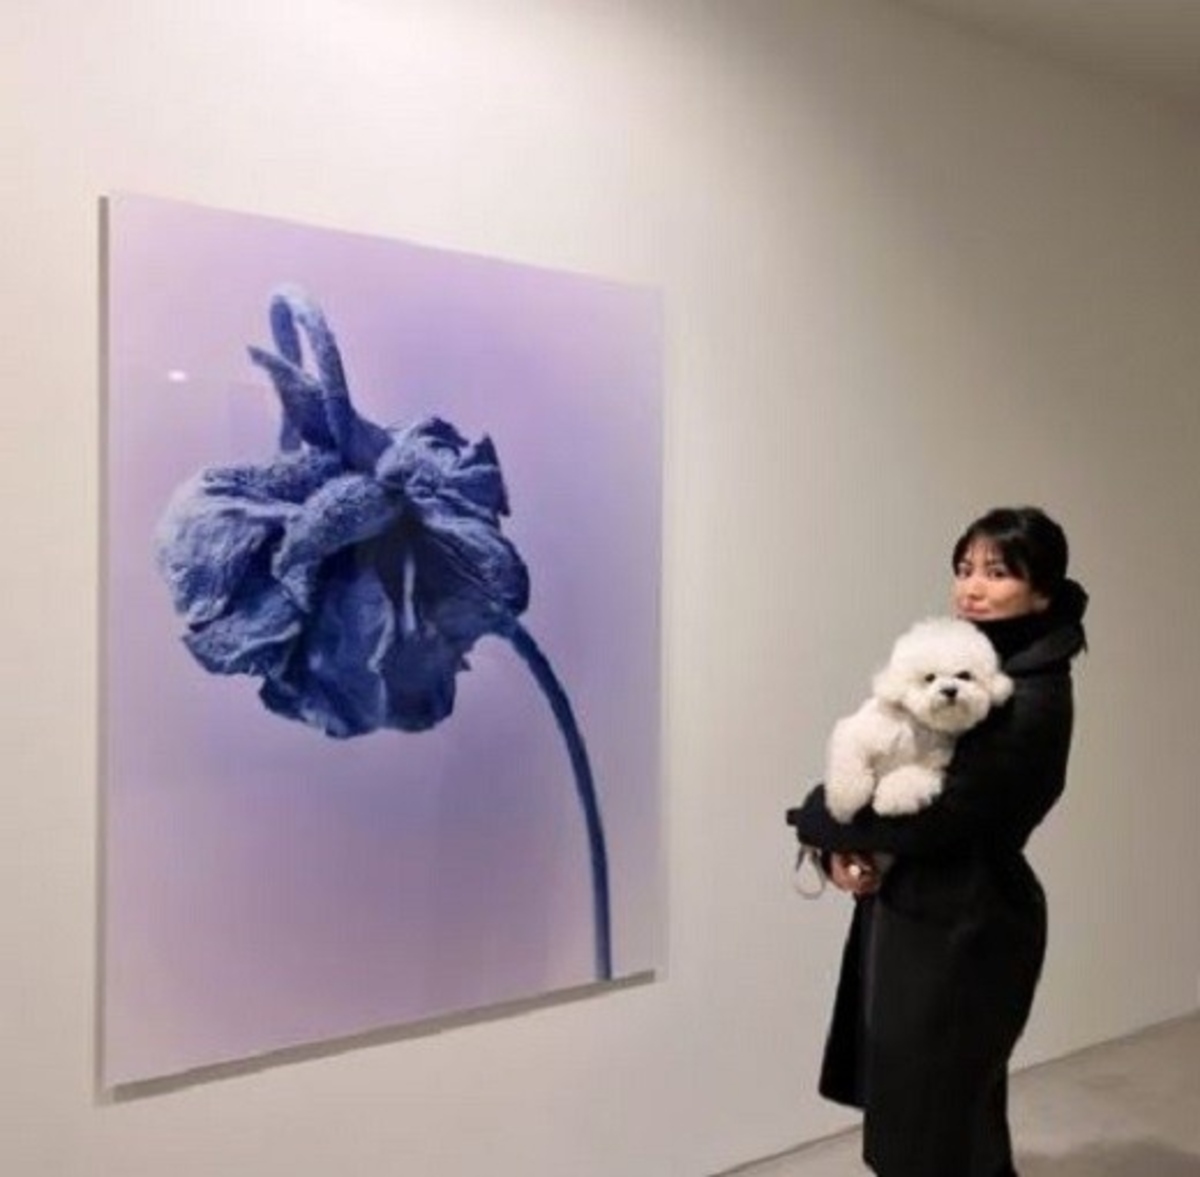 宋慧乔出席好友举办的个人展览 晒出与爱犬的萌照